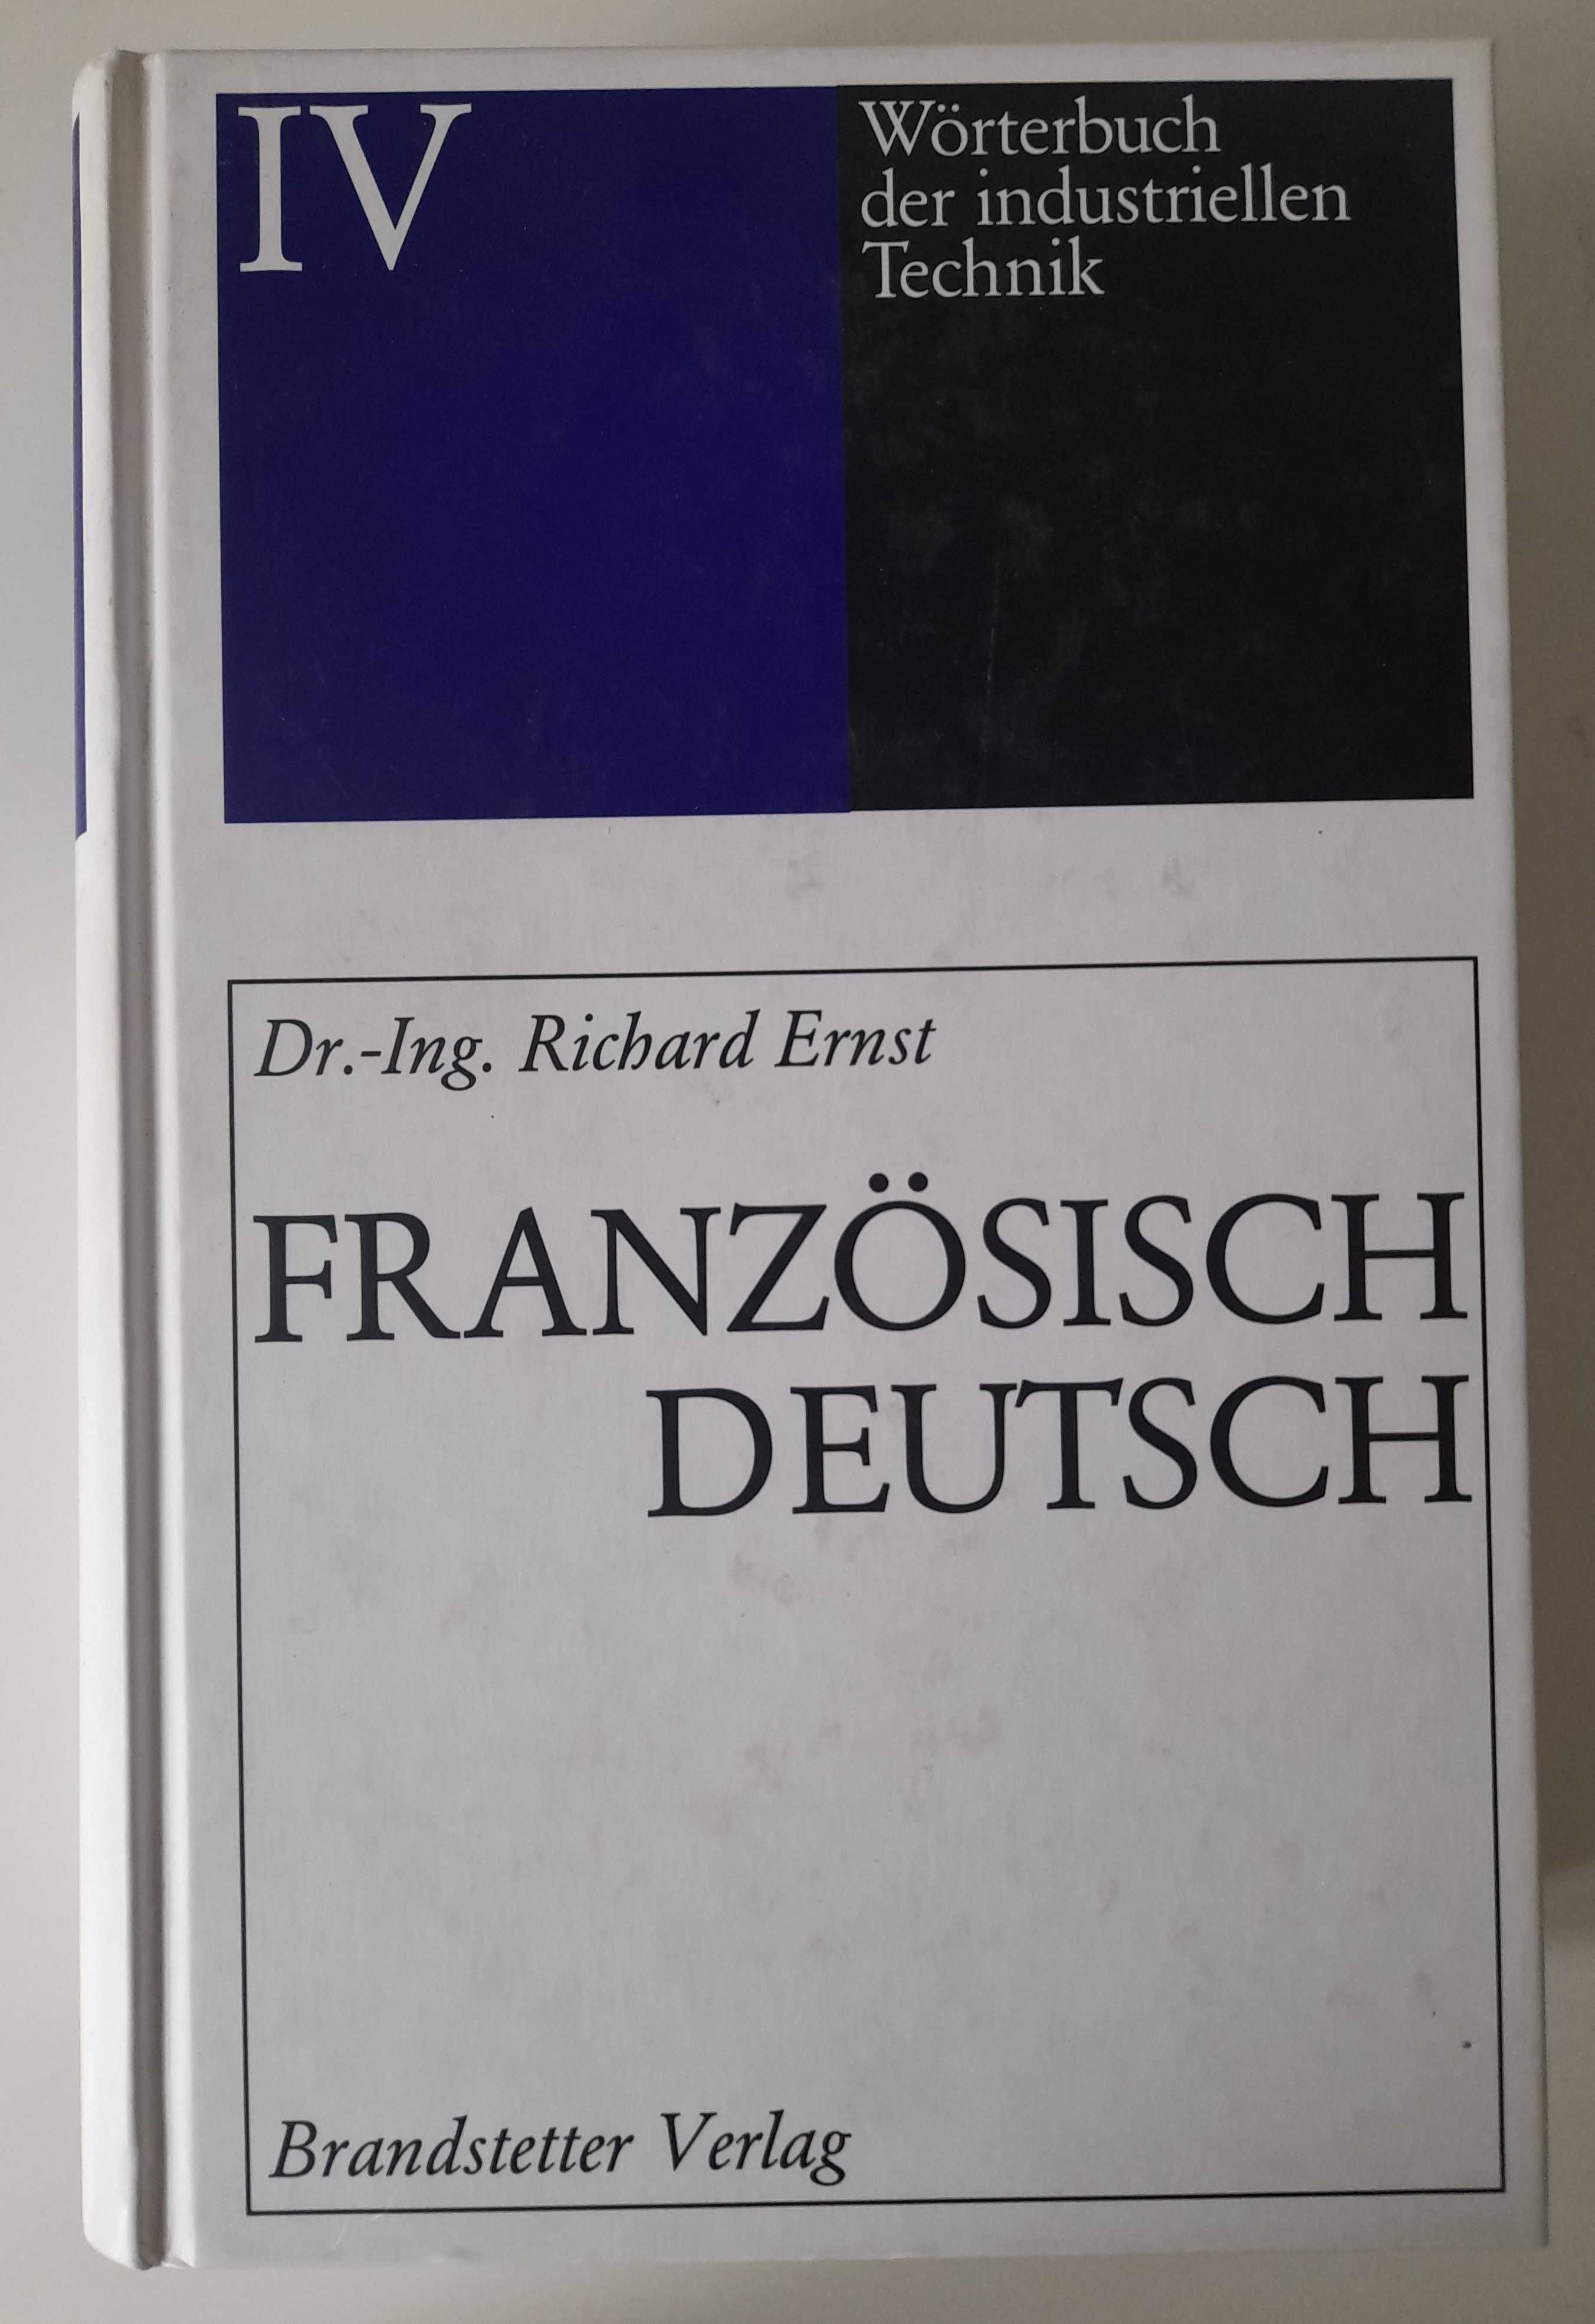 Worterbuch der industriellen Technik Franzosisch Deutsch Richard Ernst